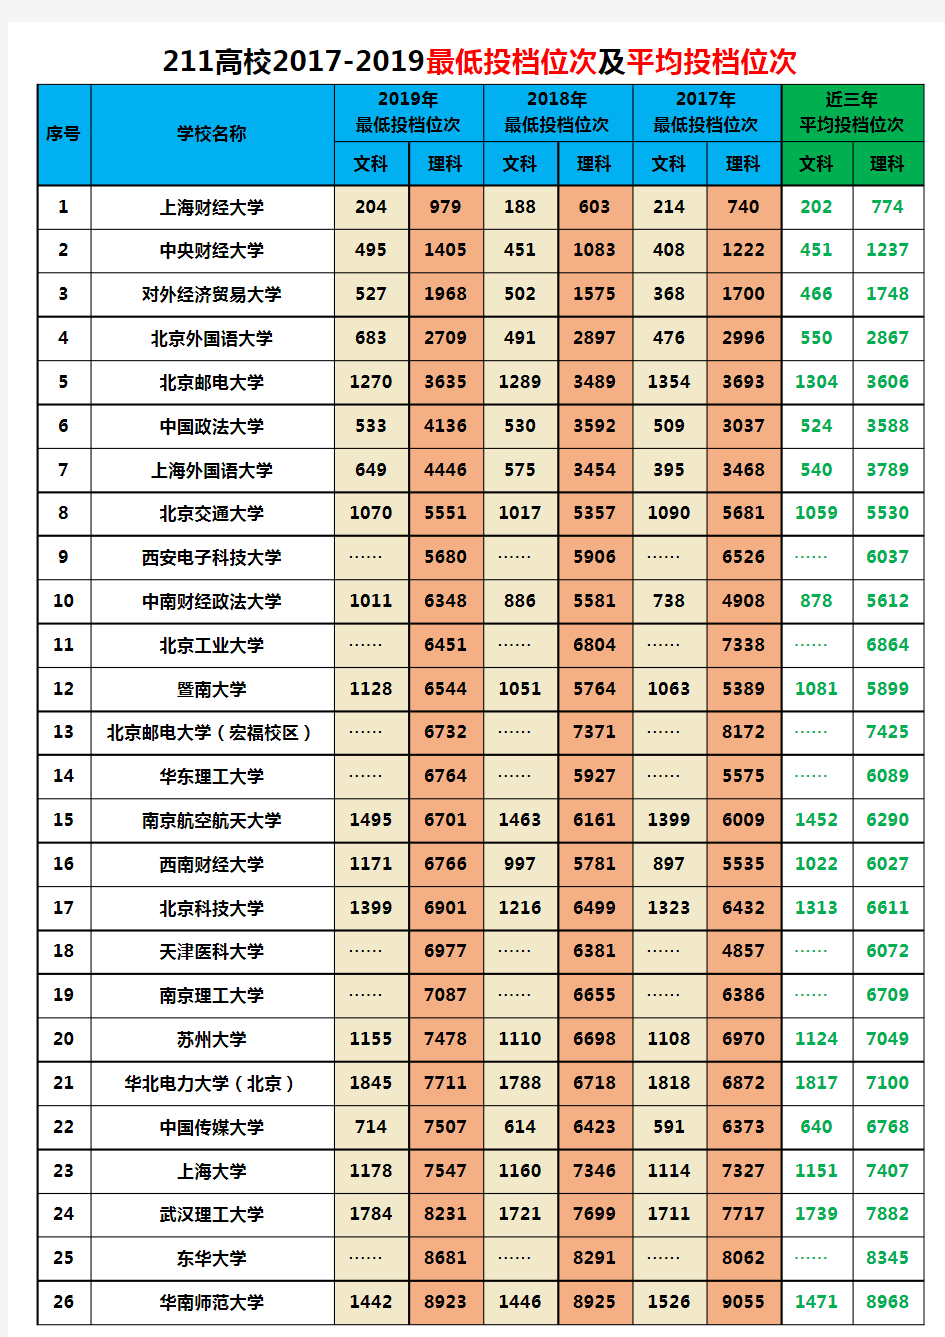 江西省2017-2019年高考985、211高校最低投档位次及平均位次